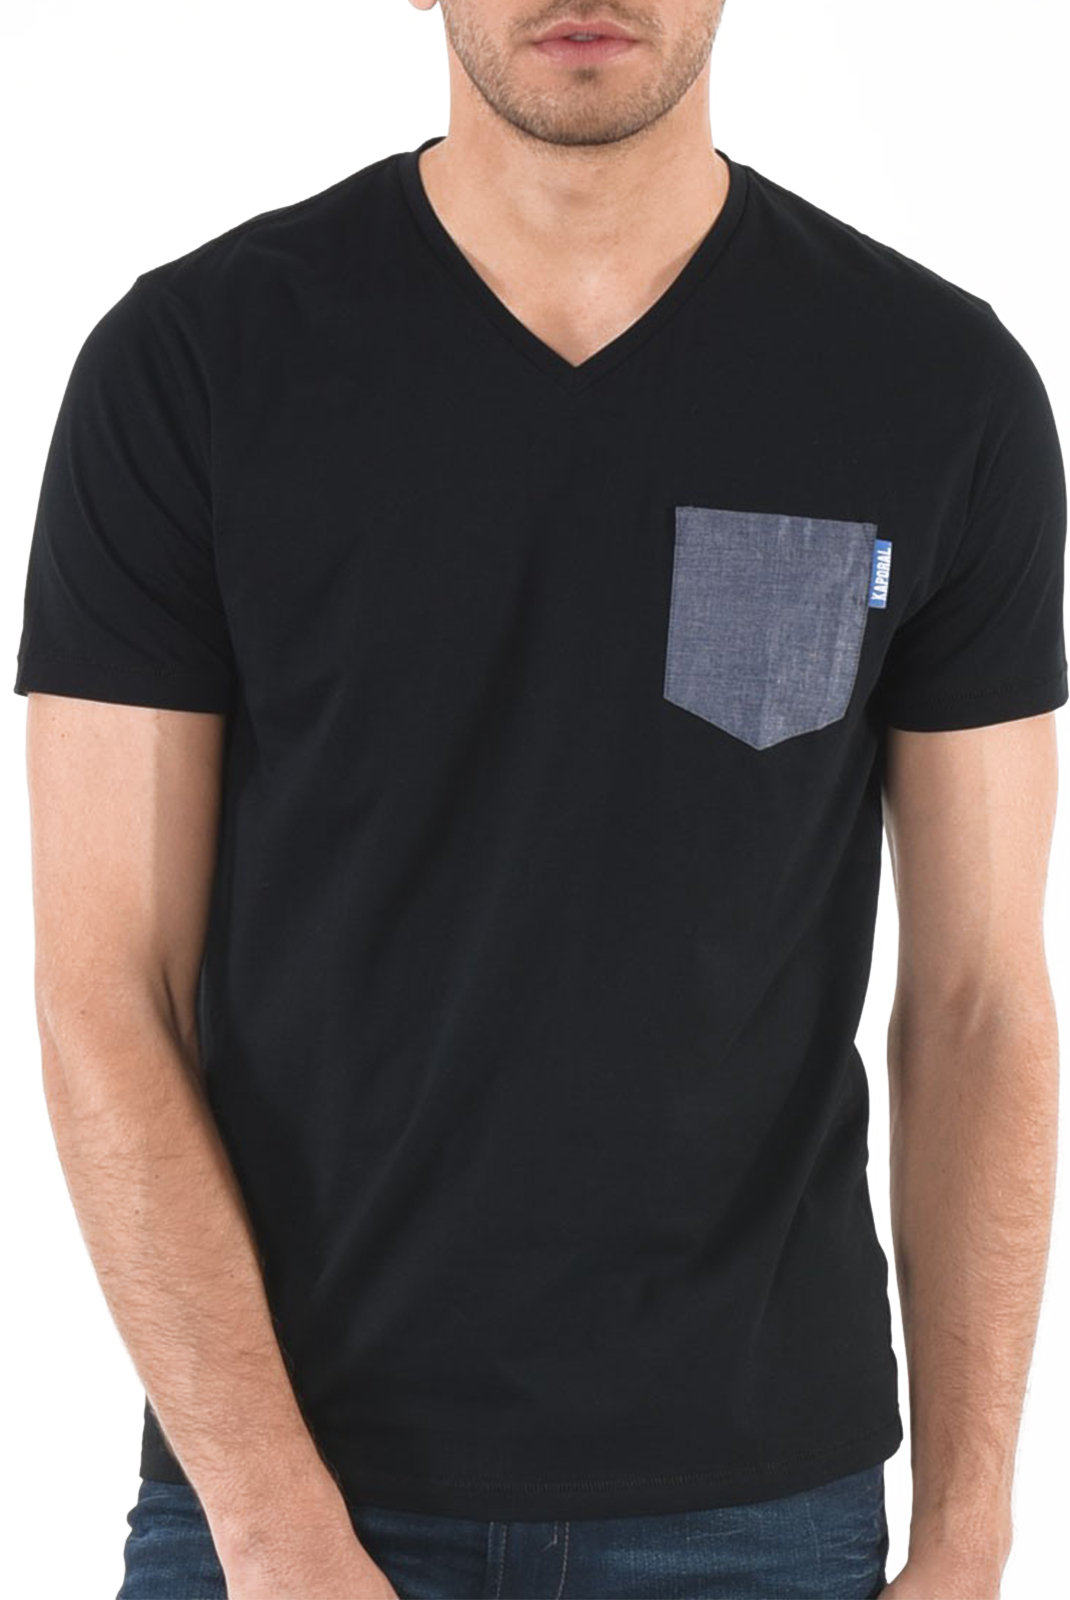 Kaporal Tee-shirt Coupe Droite Noir Givar Homme